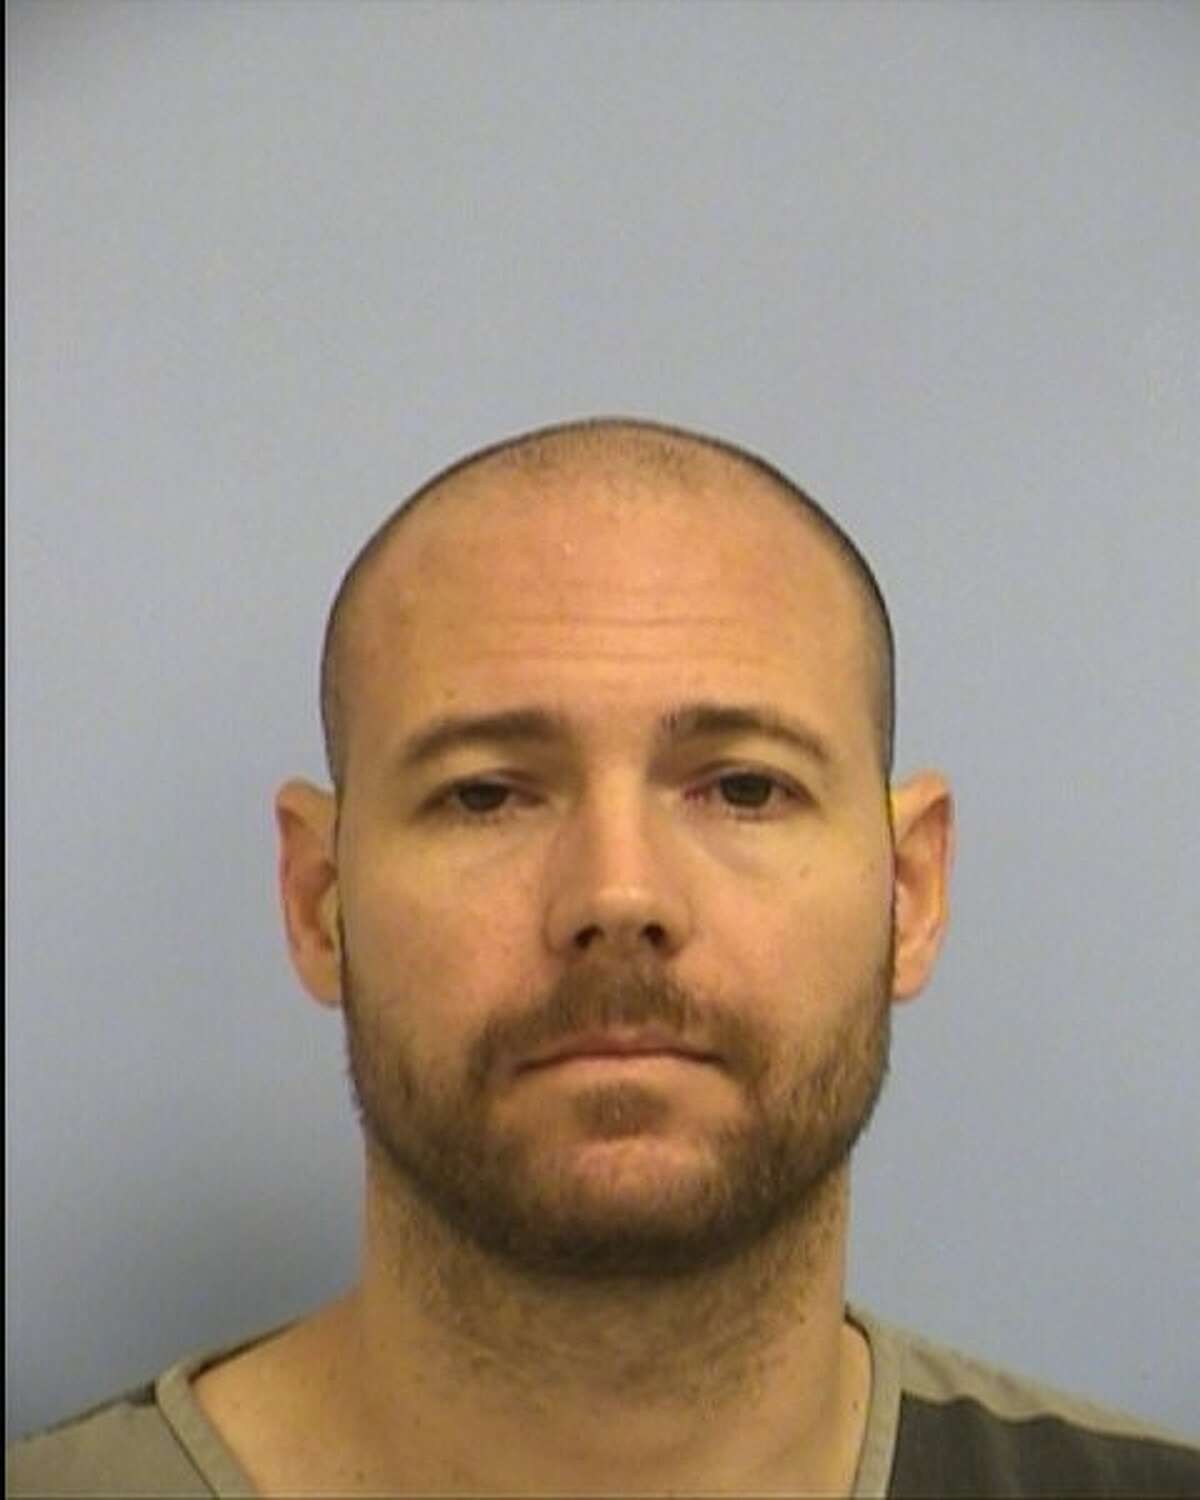 Matthew Rutledge, 39, was arrested on suspicion of graffiti.